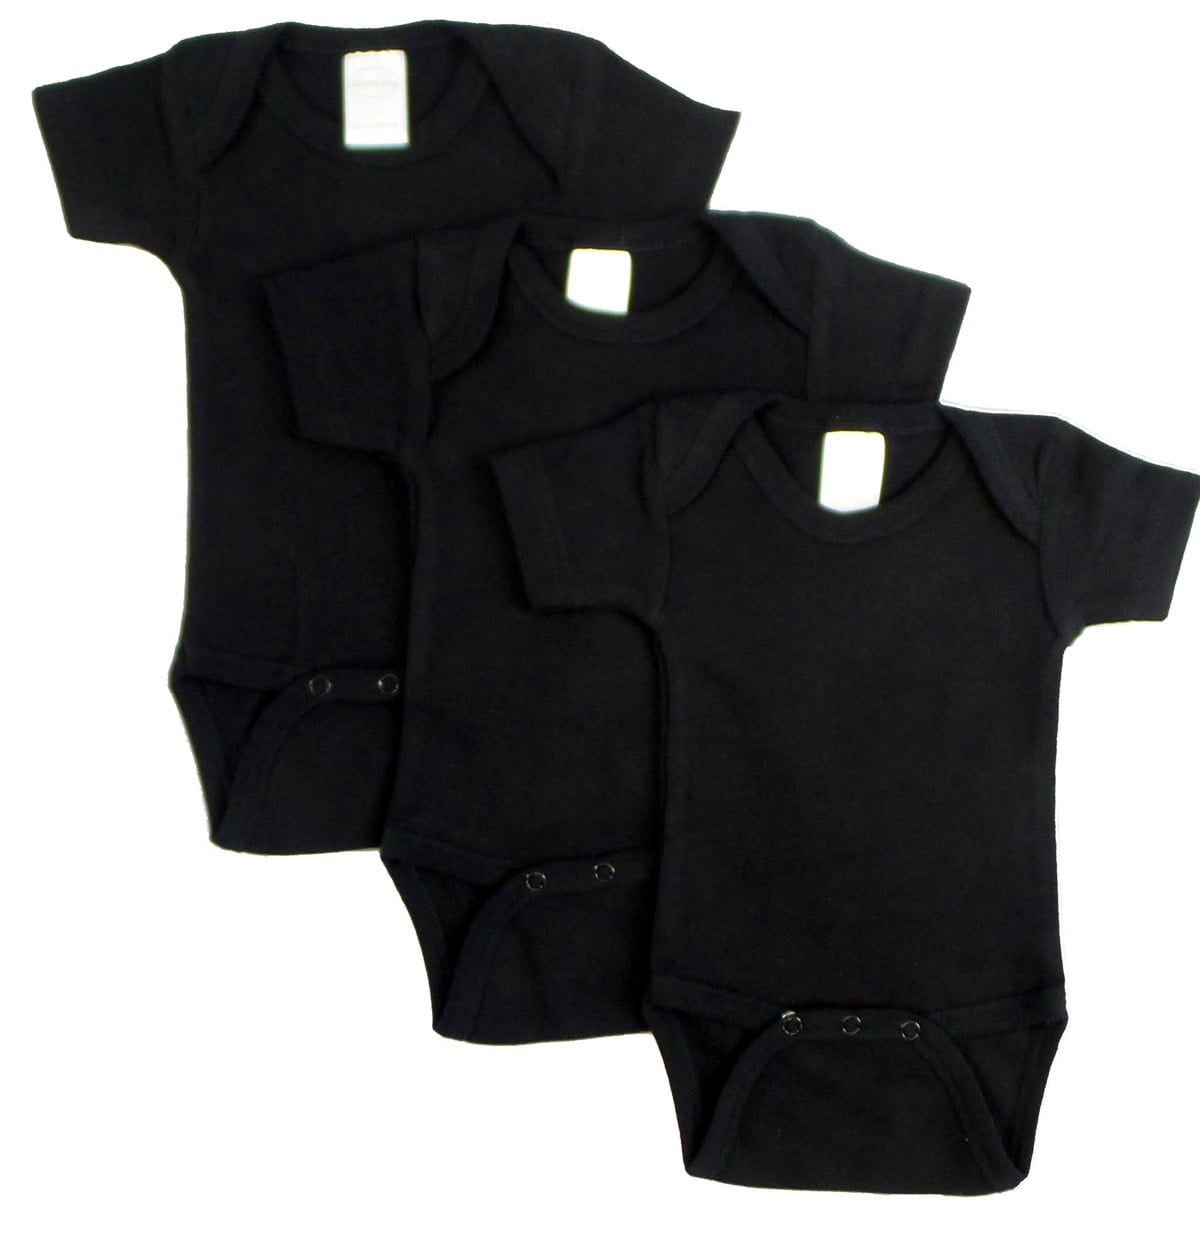 0010bl3-m Short Sleeve - Black, Medium - Pack Of 3